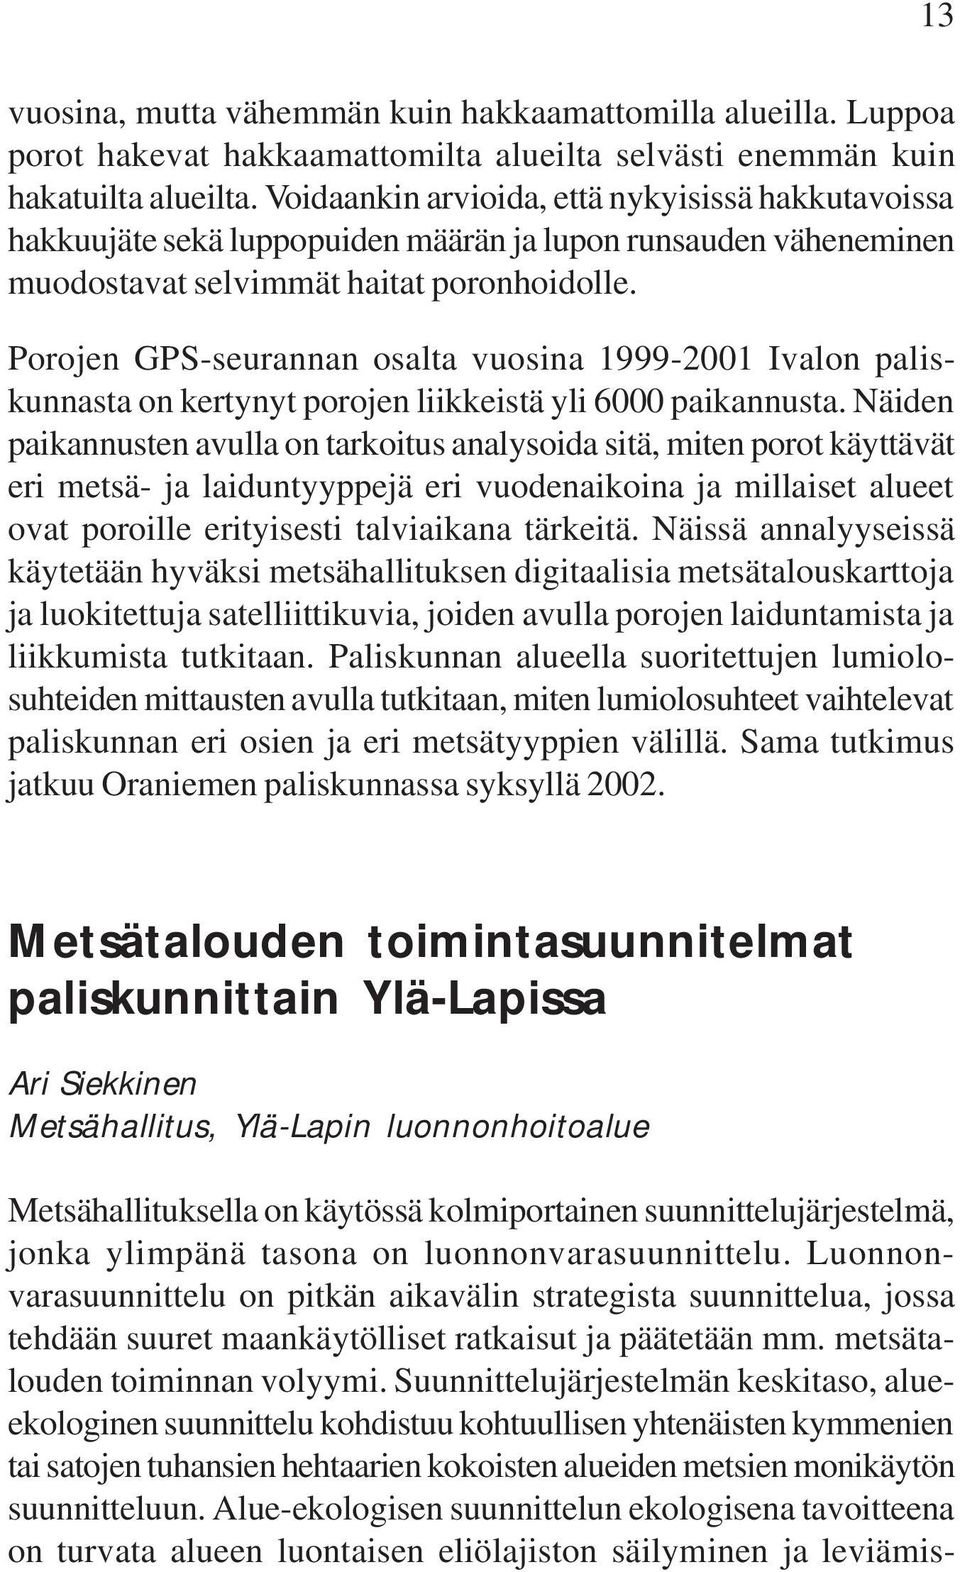 Porojen GPS-seurannan osalta vuosina 1999-2001 Ivalon paliskunnasta on kertynyt porojen liikkeistä yli 6000 paikannusta.